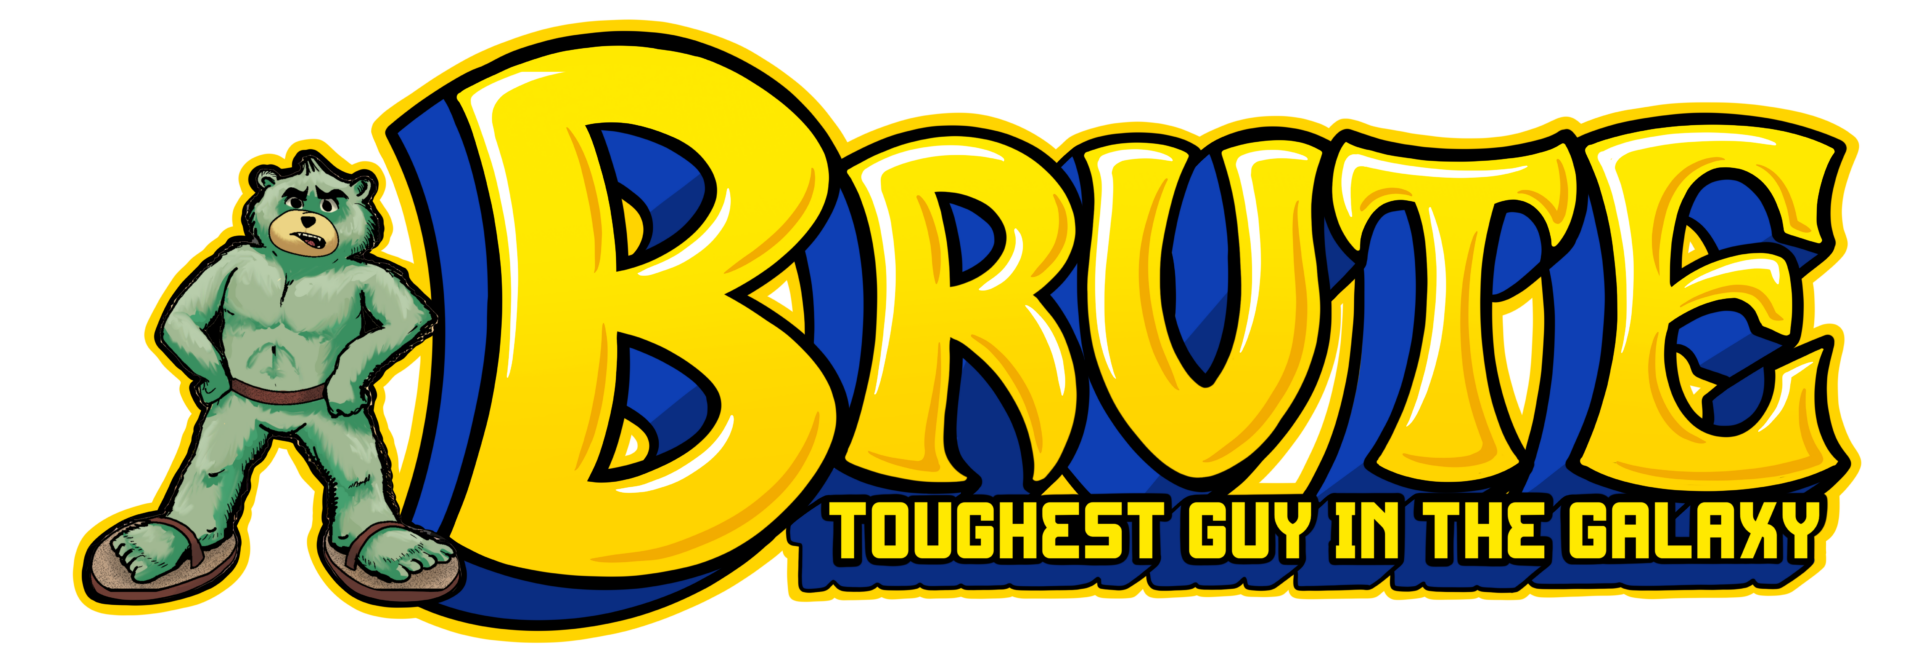 Brute Logo sm no bg